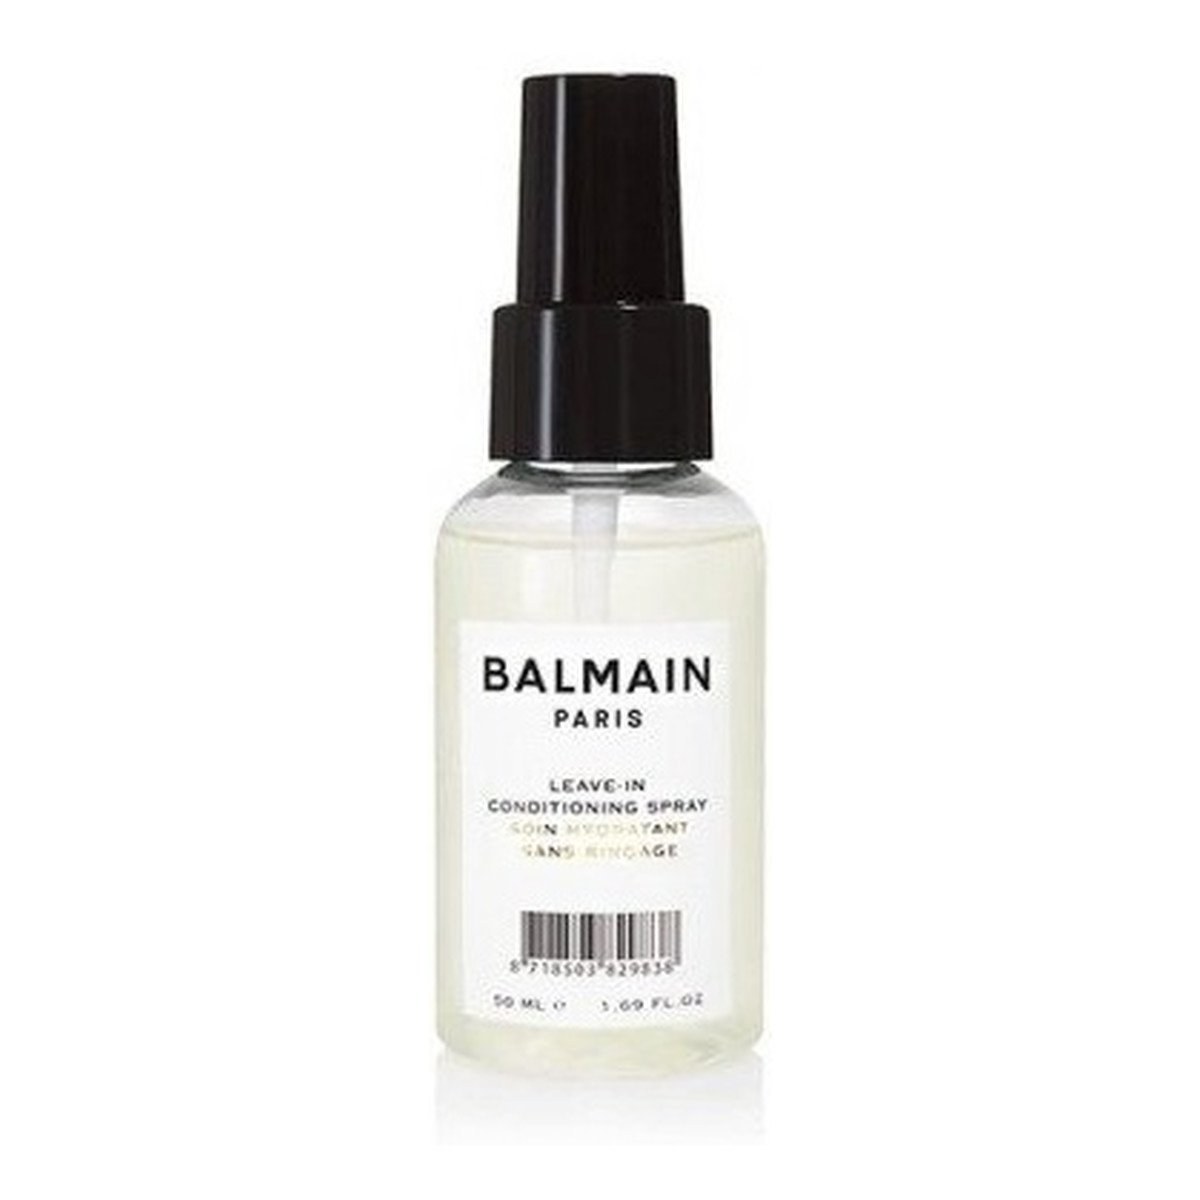 Balmain Leave-in Conditioning Spray odżywcza Mgiełka ułatwiająca rozczesywanie włosów 50ml